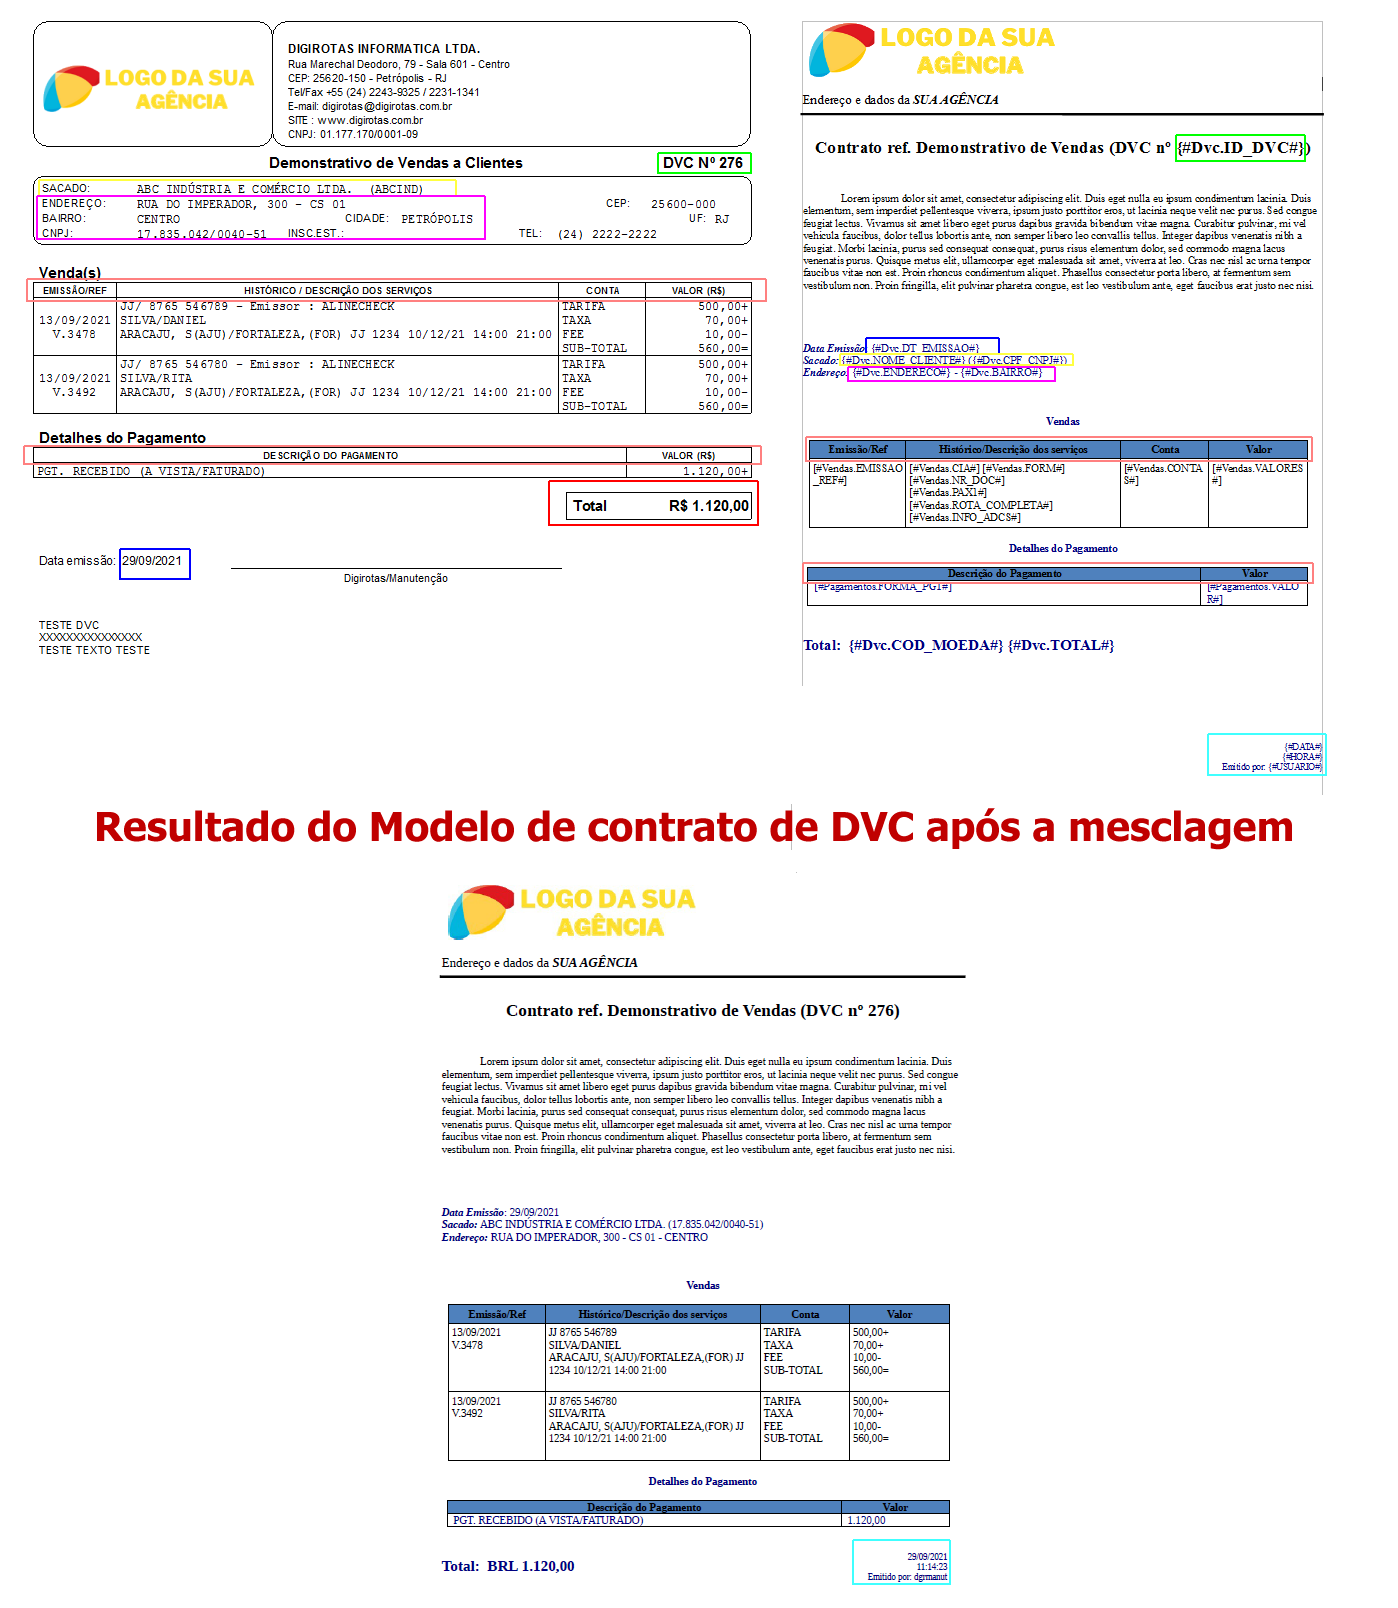 Exemplo de um modelo de contrato utilizando tags do DVC